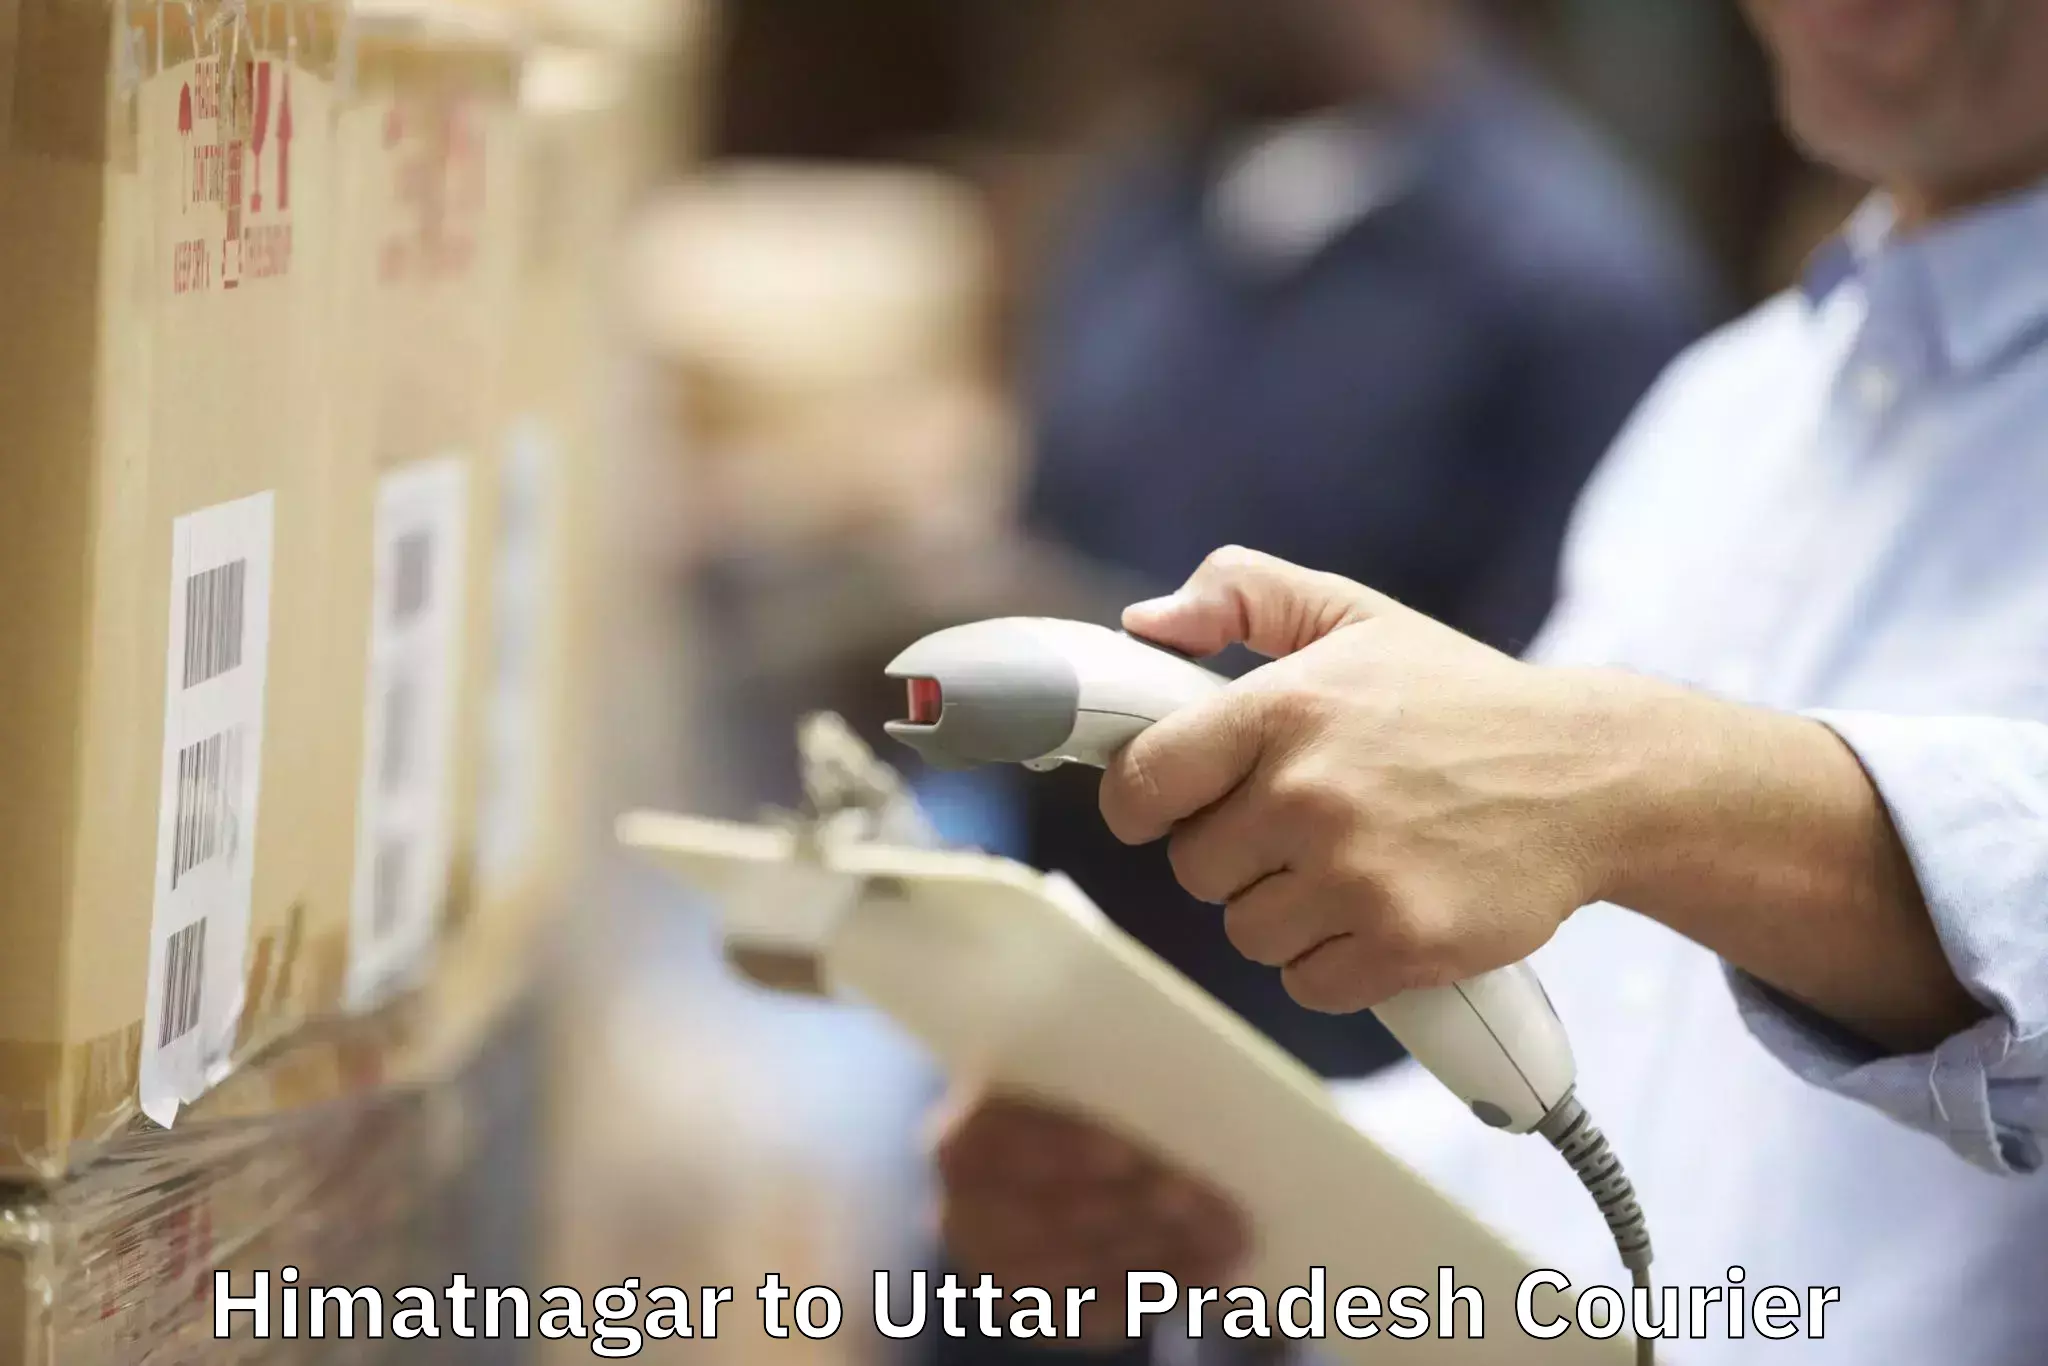 Household moving and storage Himatnagar to Varanasi